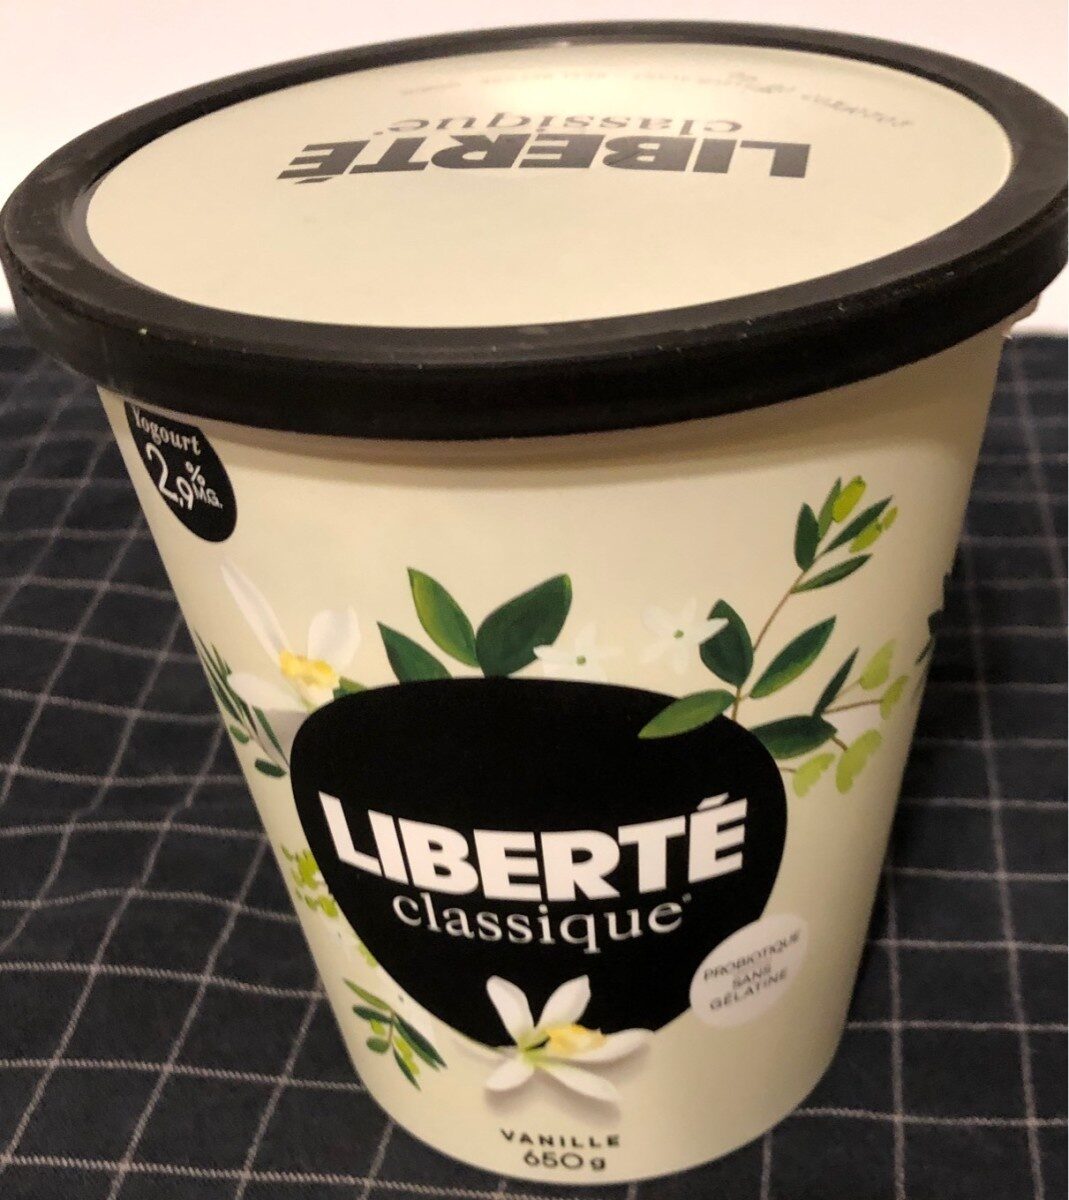 Liberté classique vanille - Produit - en